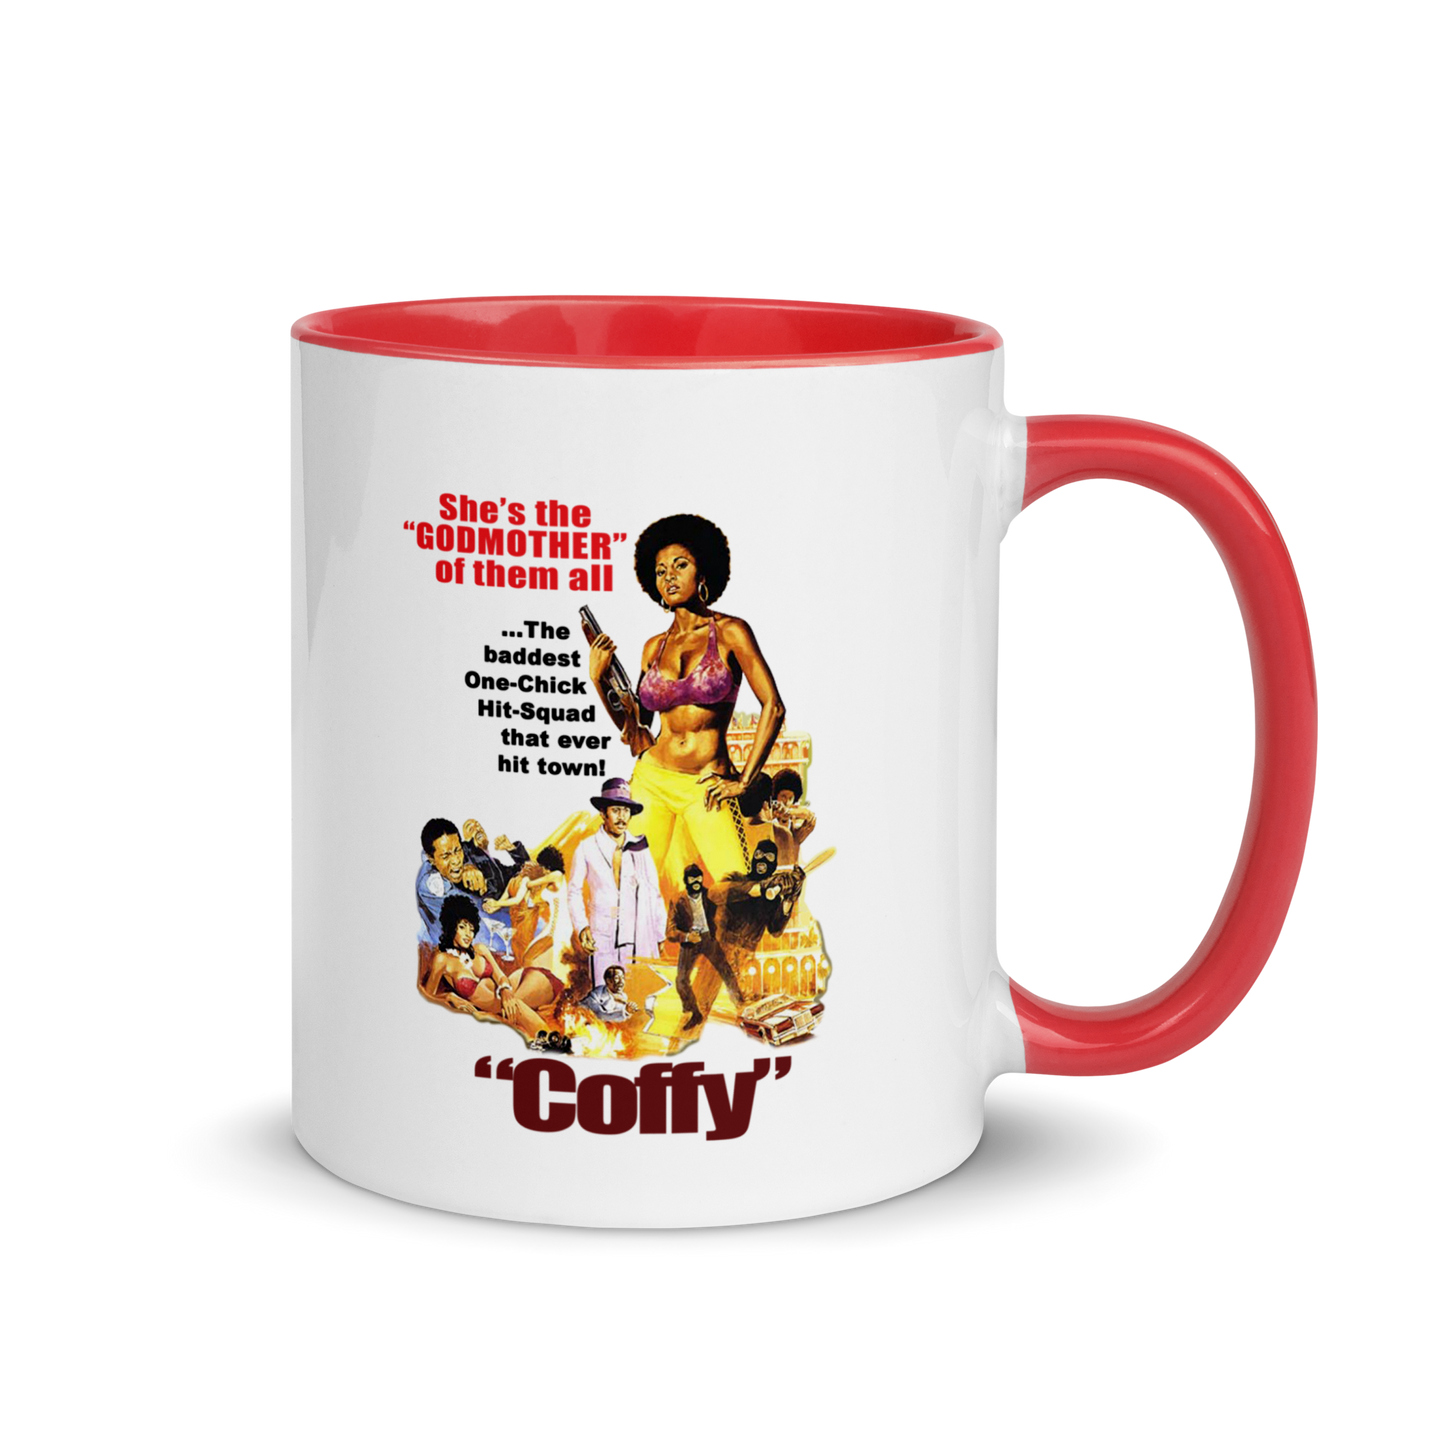 Vintage Coffy Blaxploitation Ceramic Color-Pop Mug